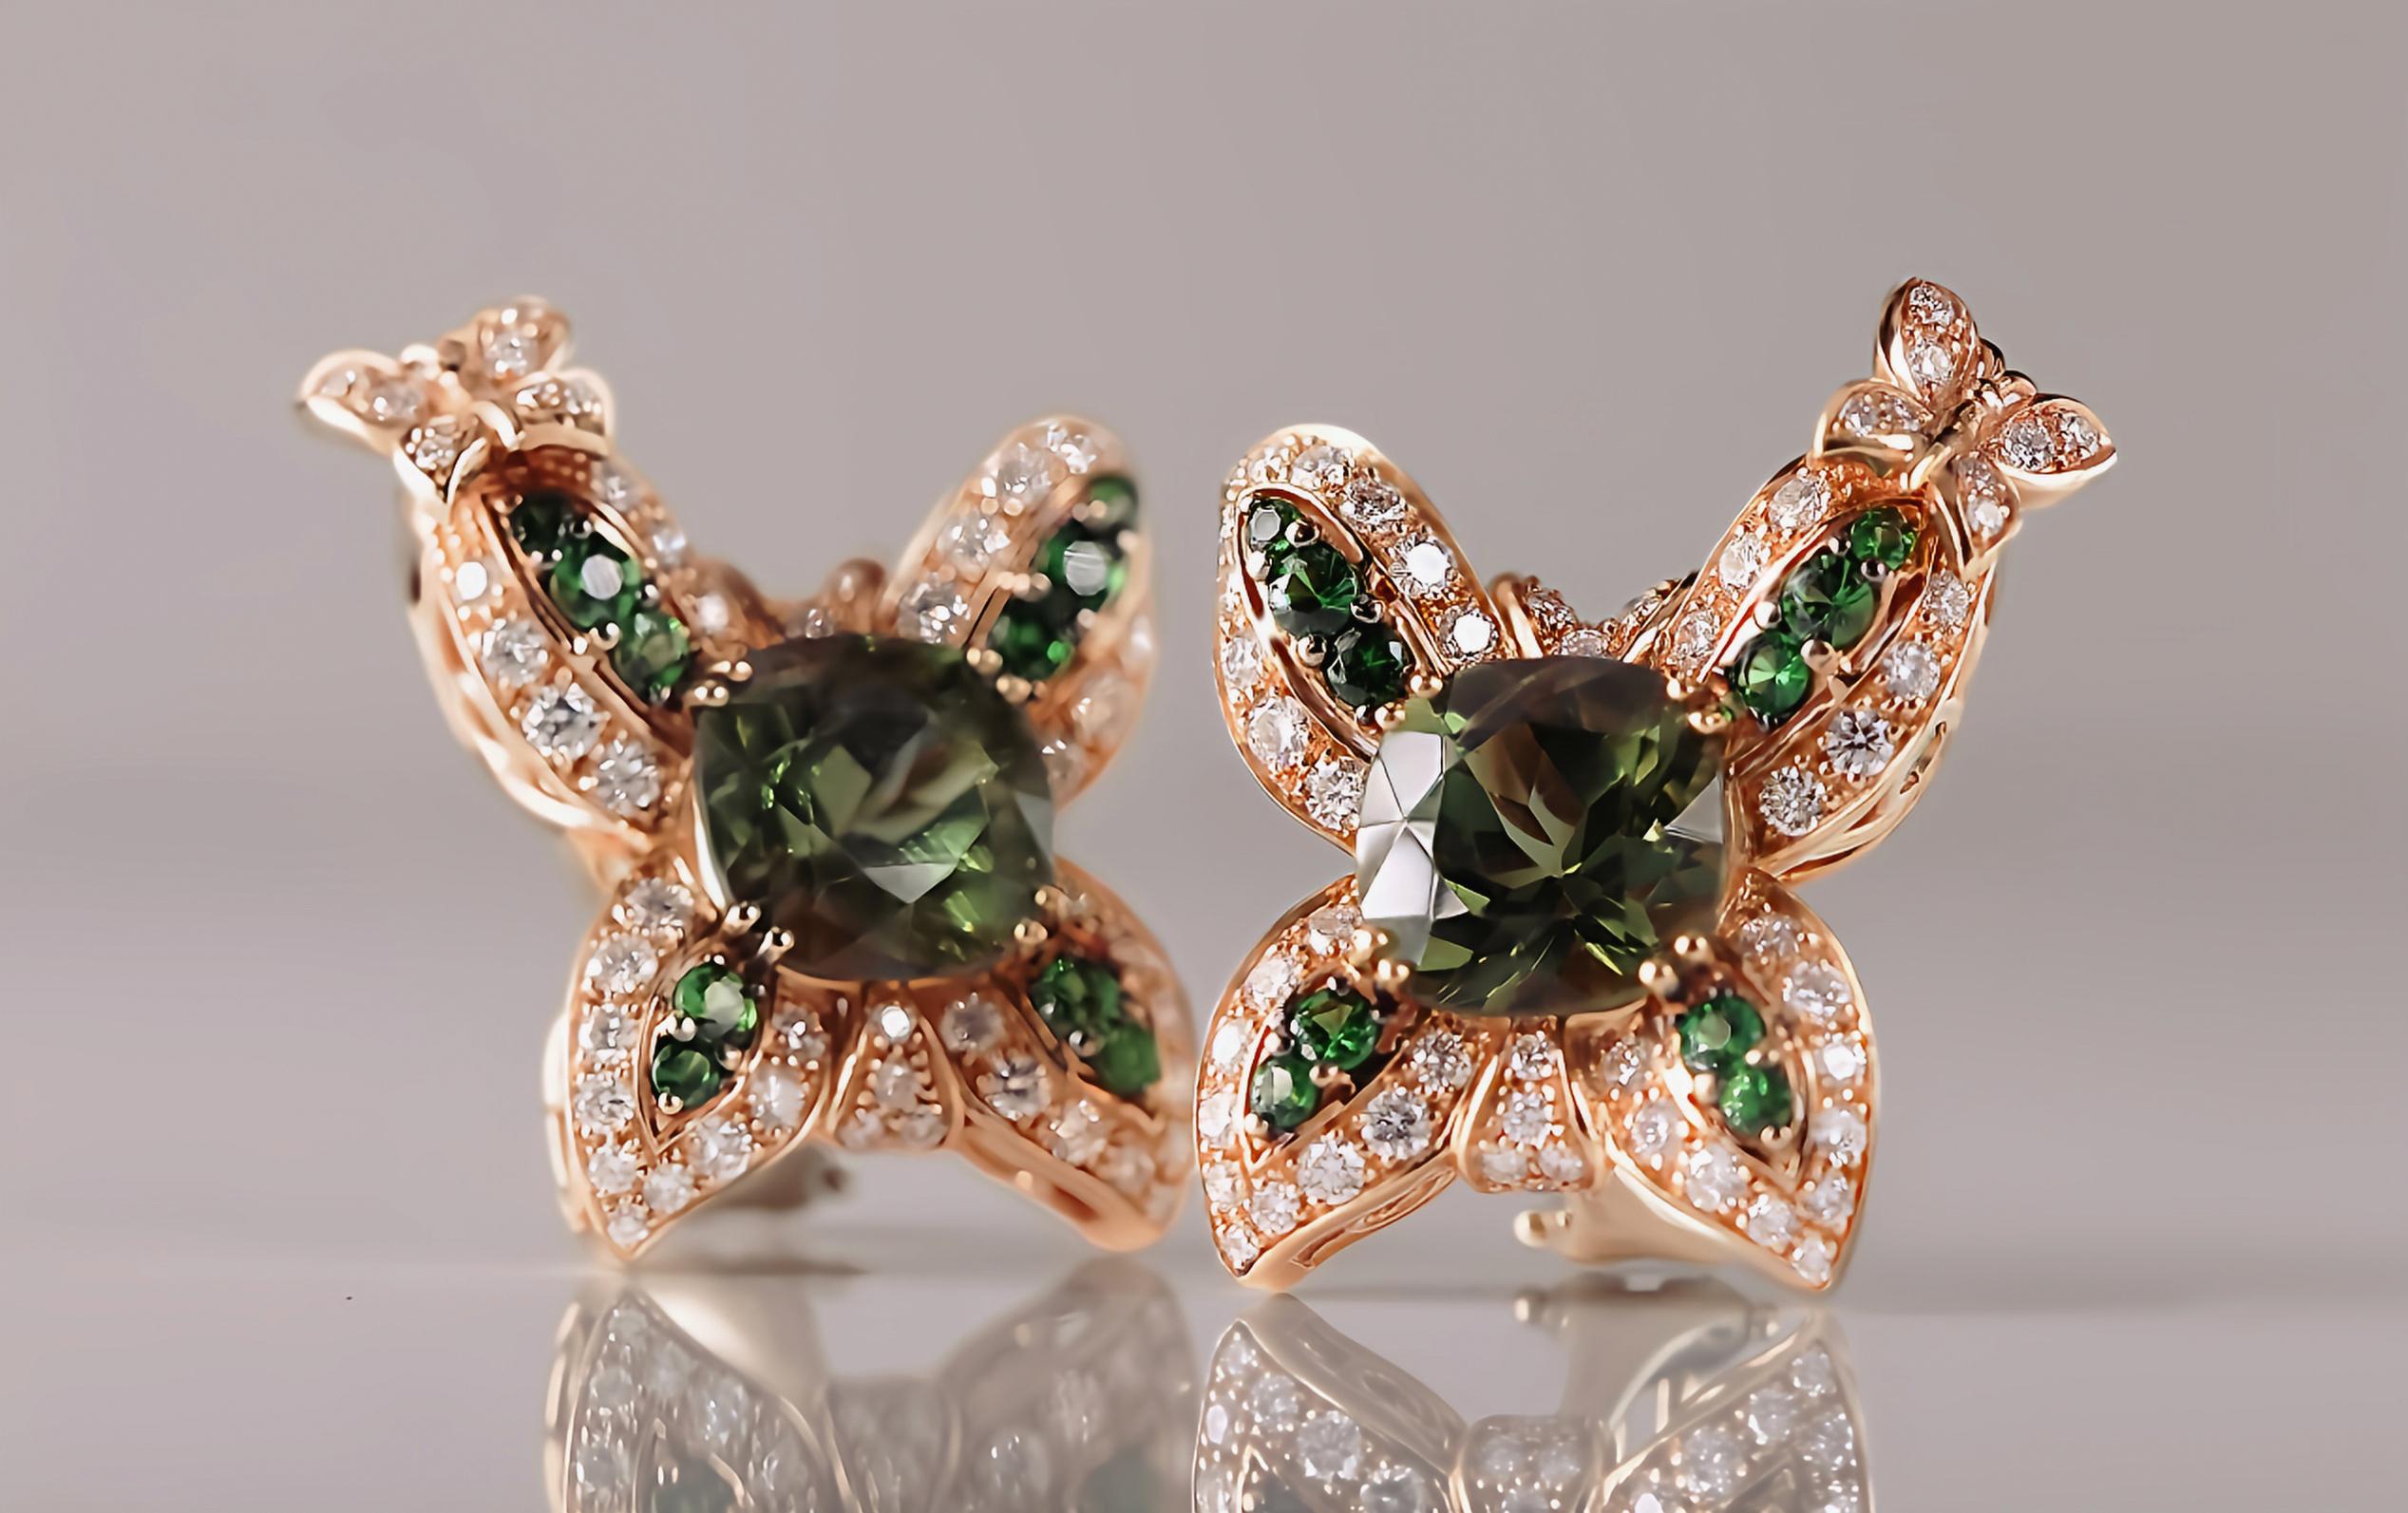 Diese wunderschönen Ohrringe werden in Florenz von toskanischen Kunsthandwerkern aus 18-karätigem Roségold gefertigt und sind mit einem charmanten Schmetterlingsdesign versehen.

In der Mitte jedes Ohrrings befindet sich ein grüner Turmalin aus